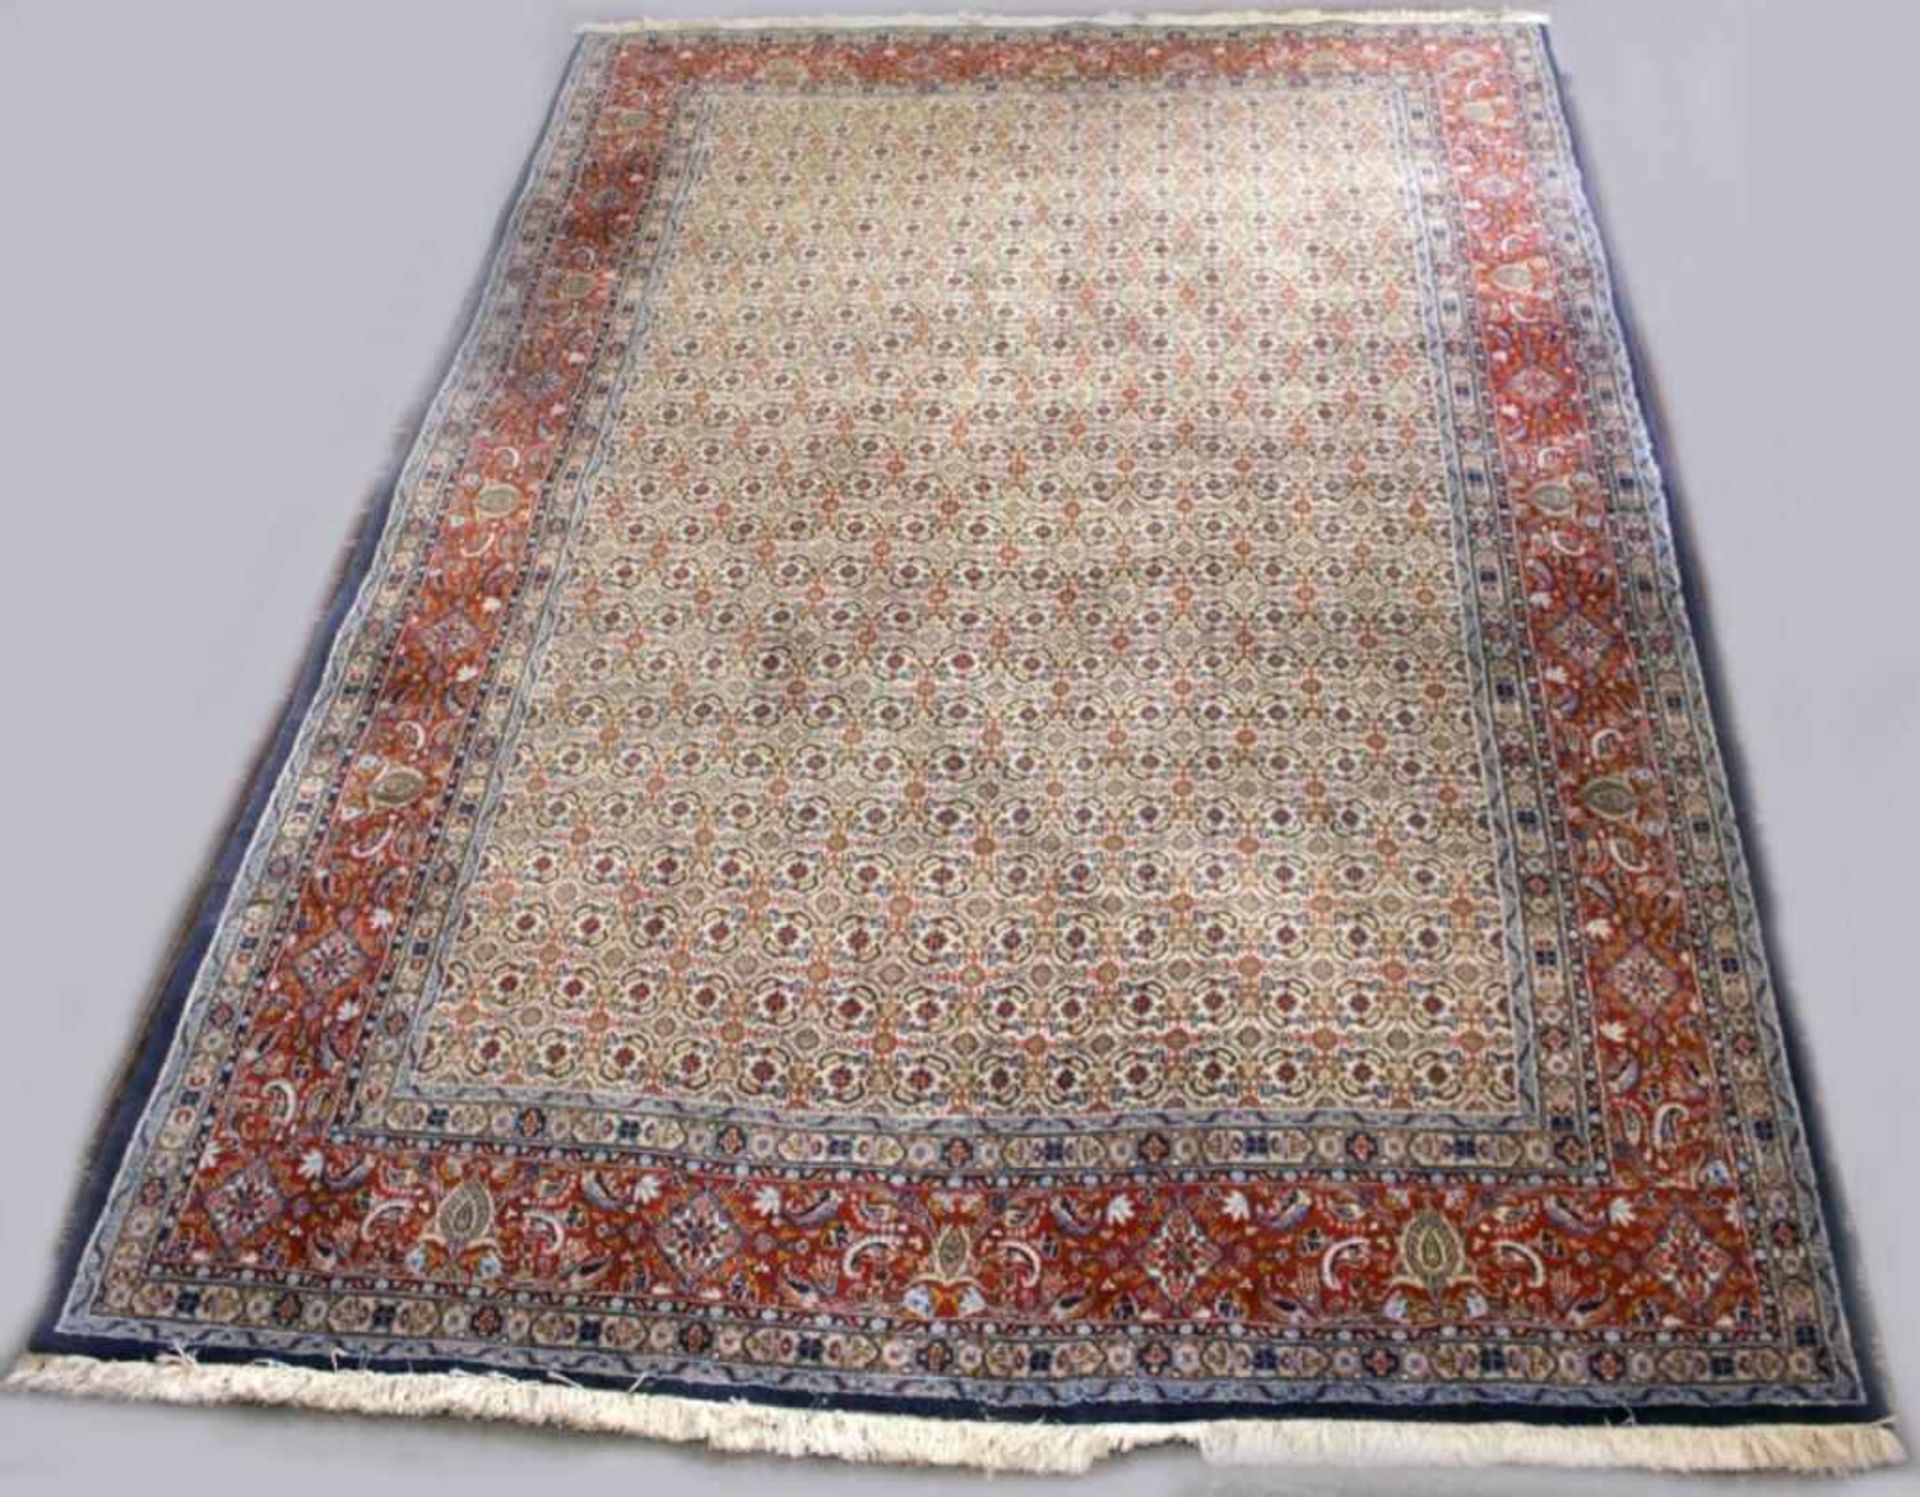 O.-Teppich, Moud, Iran, ca. 40 Jahre alt, Wolle auf Baumwolle, 298 x 202 cm- - -20.00 % buyer's